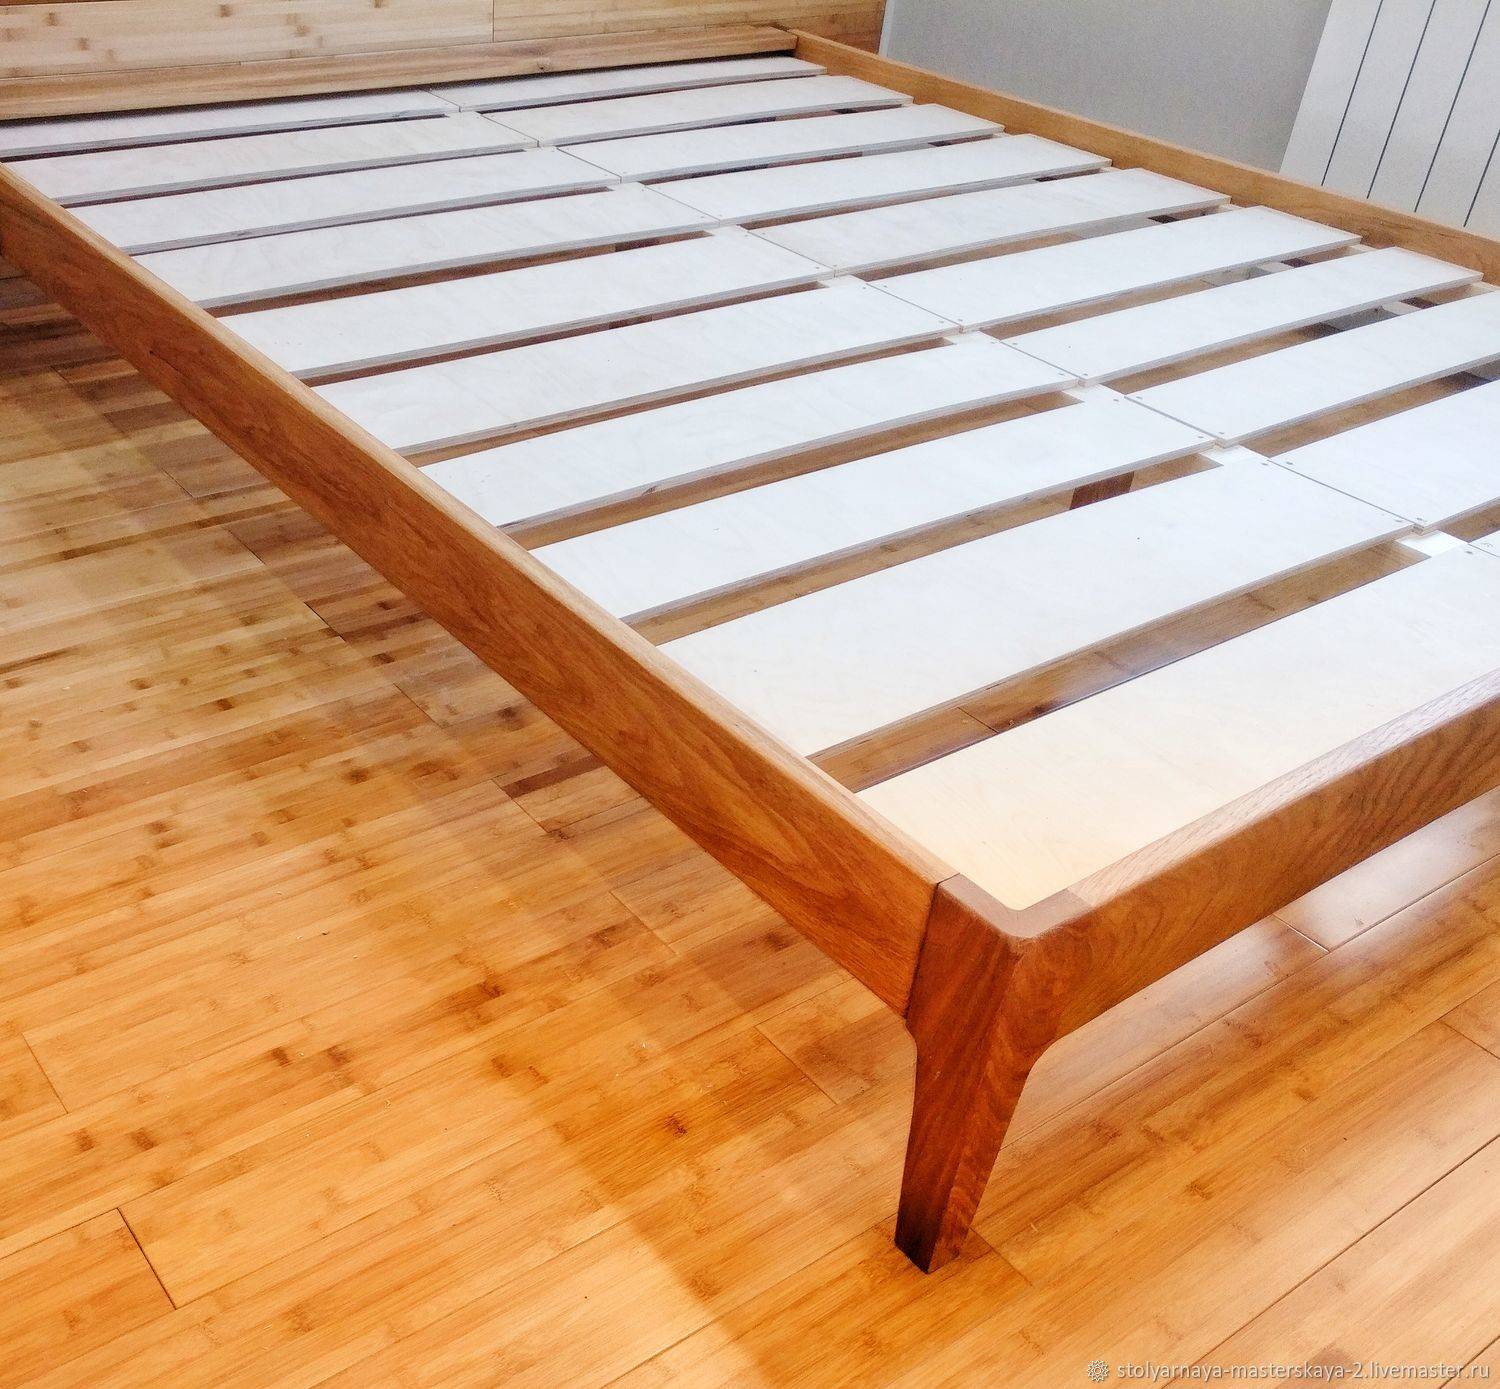 Кровать из массива дерева - особенности разновидностей дерева, типов и форм кроватей. правильный уход за кроватью из массива дерева. фото и видео-рекомендации по выбору кровати